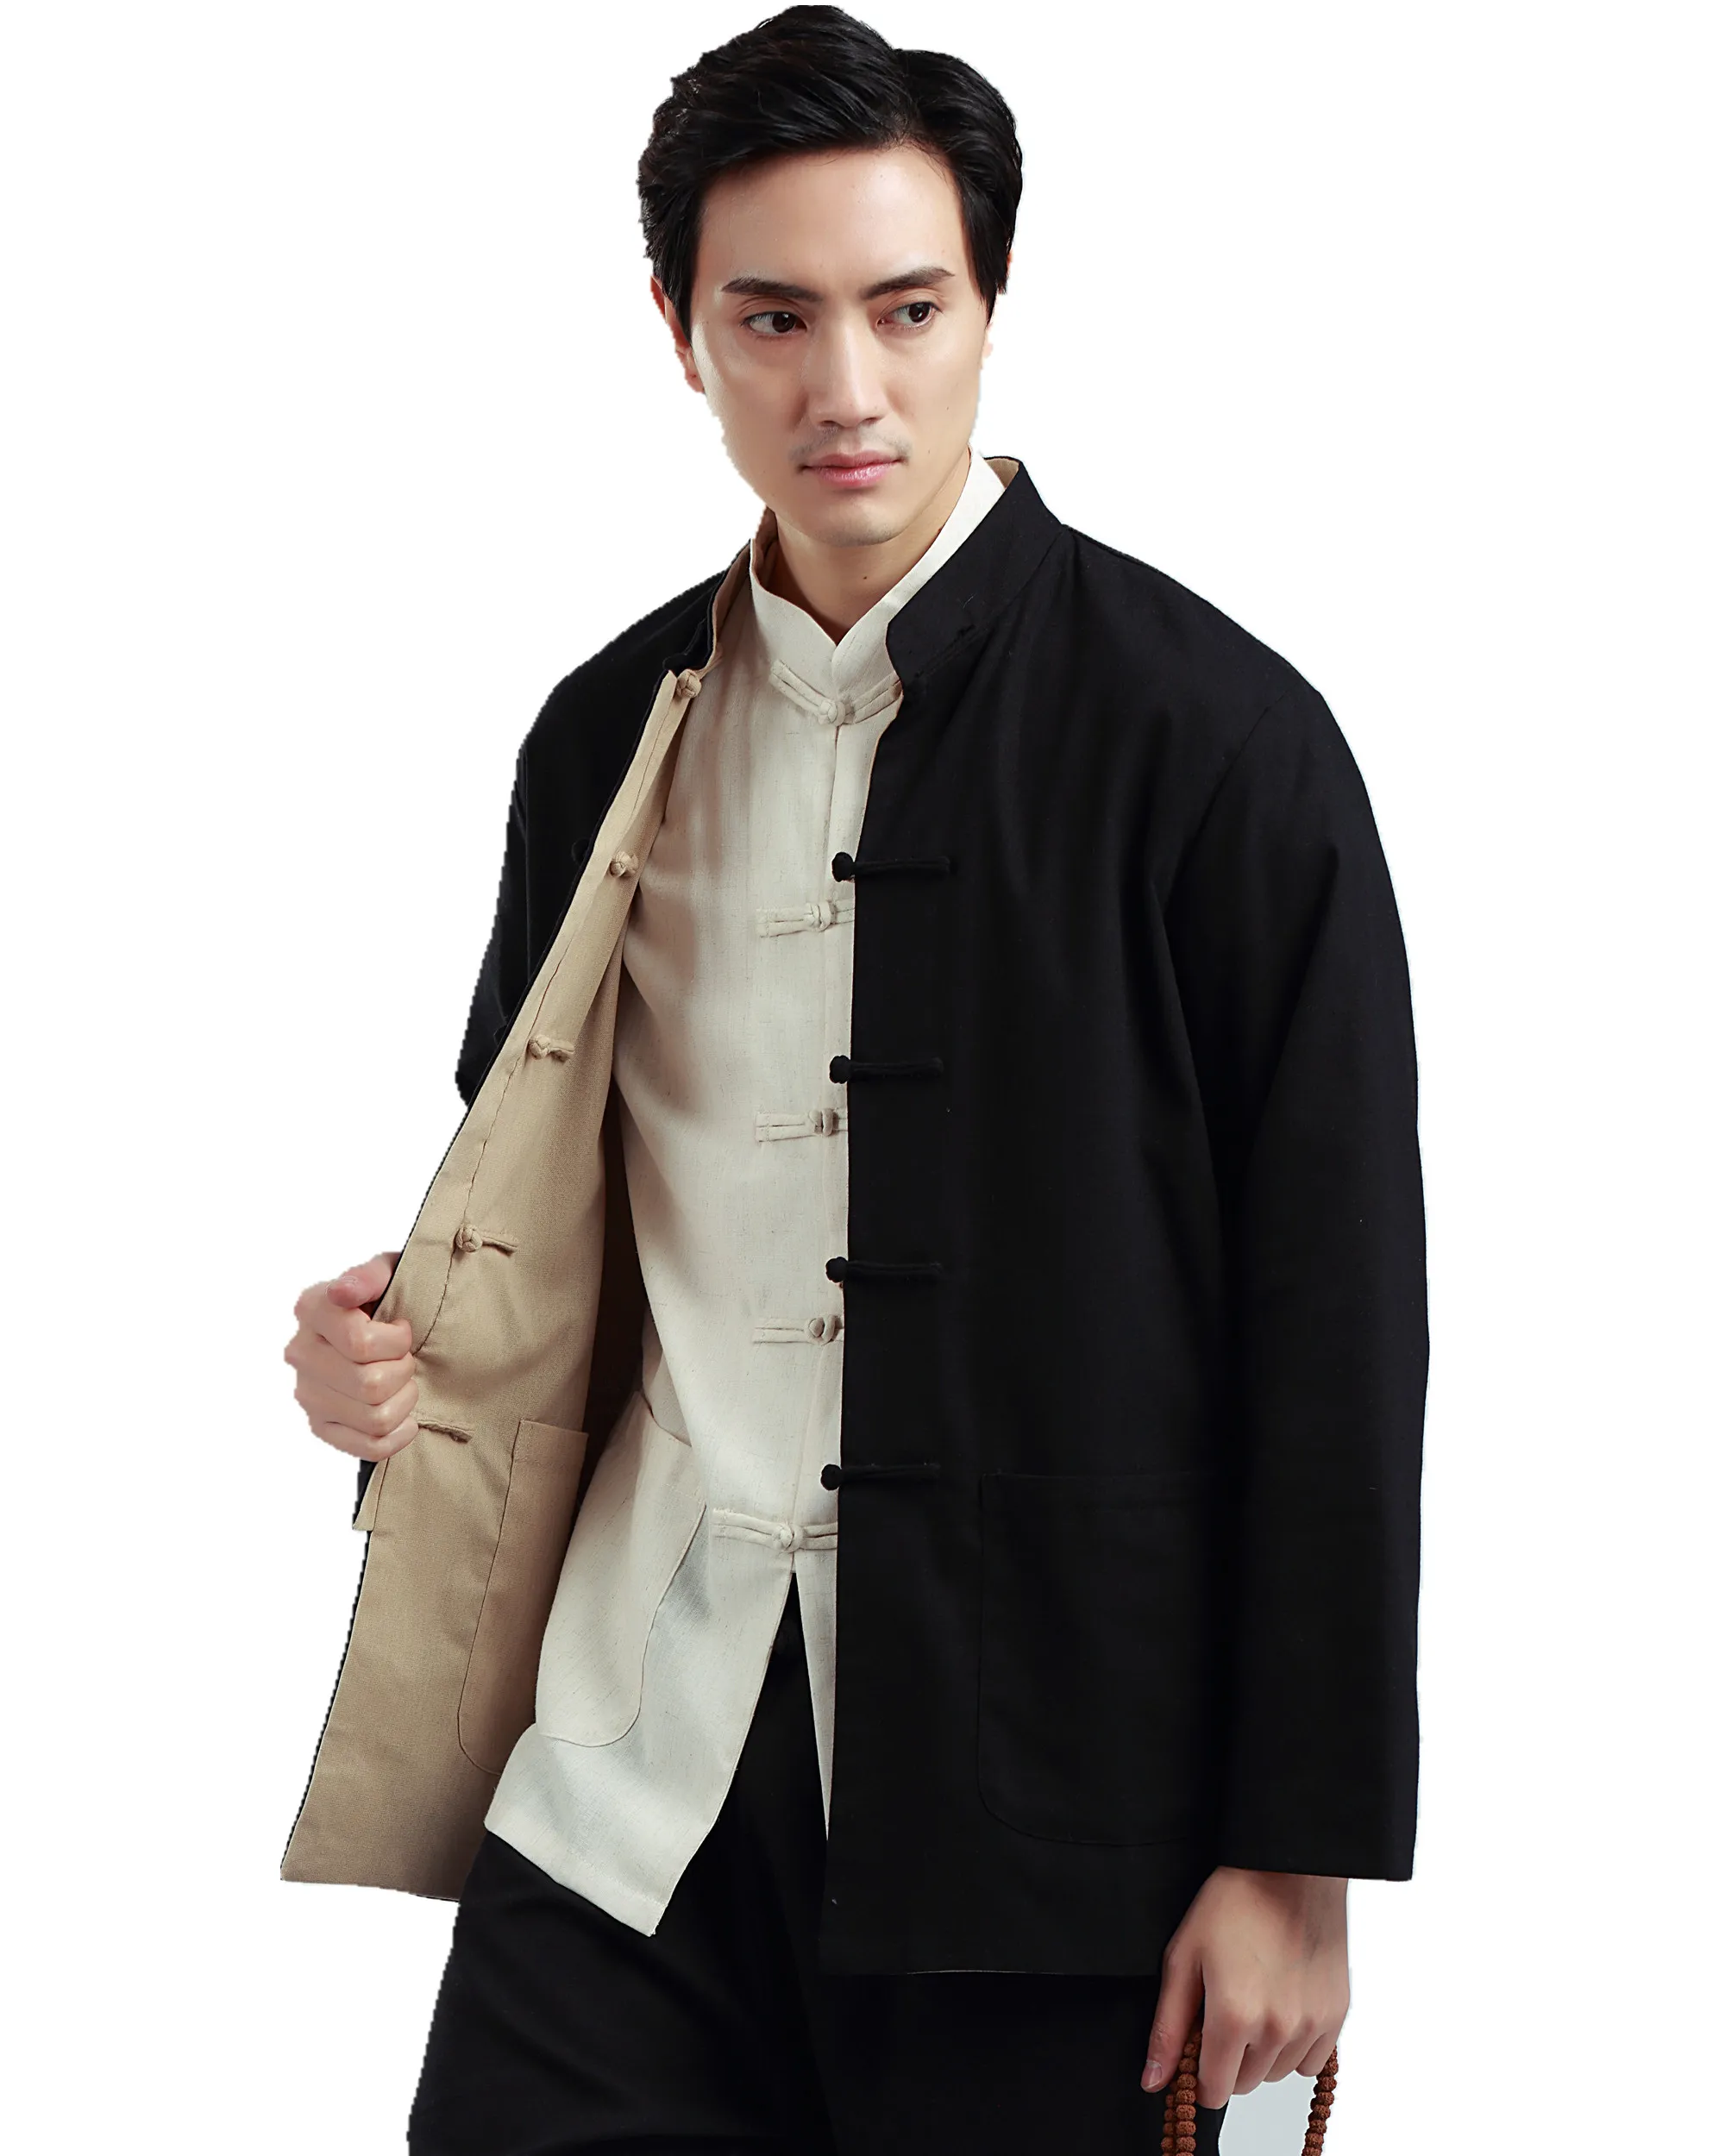 Шанхай история две стороны обратимым китайский традиционный двусторонняя одежда мандарин воротник куртки белье китайский кунг-фу рубашка мужчины